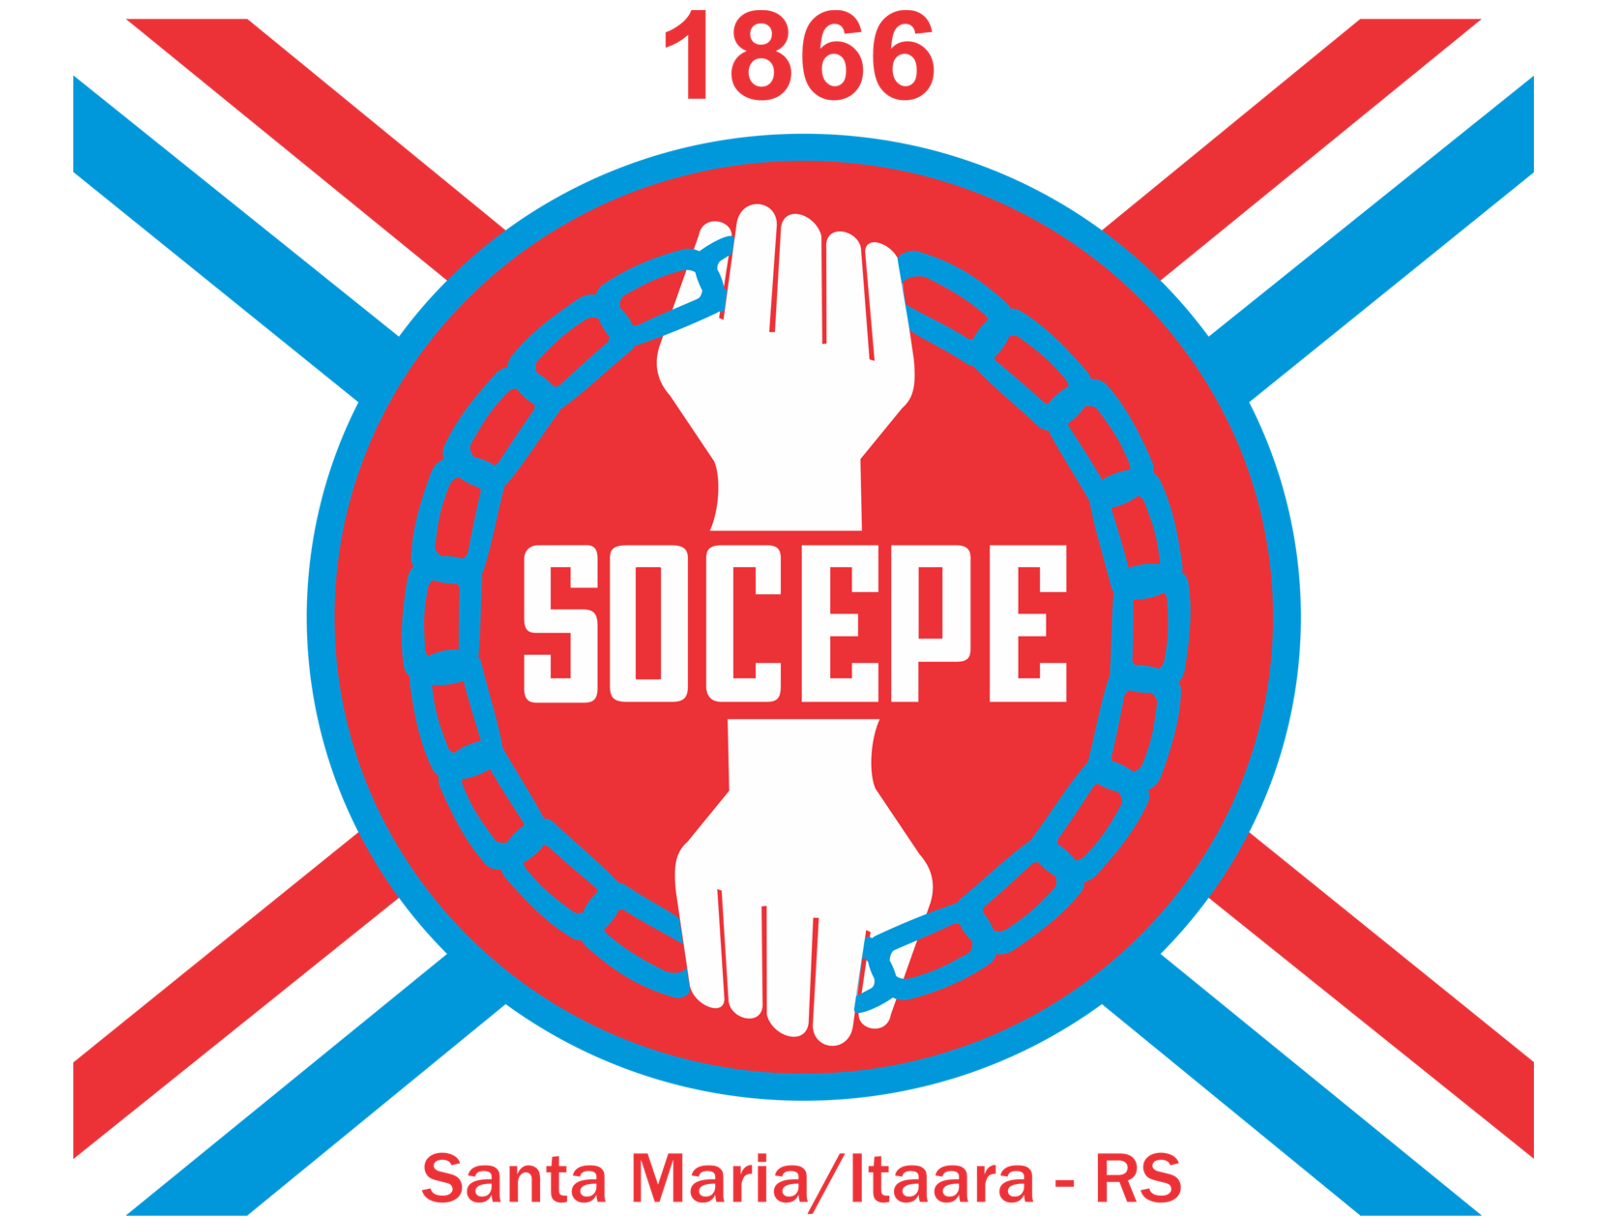 Socepe vende sede central, mas seguirá em Santa Maria, em área menor